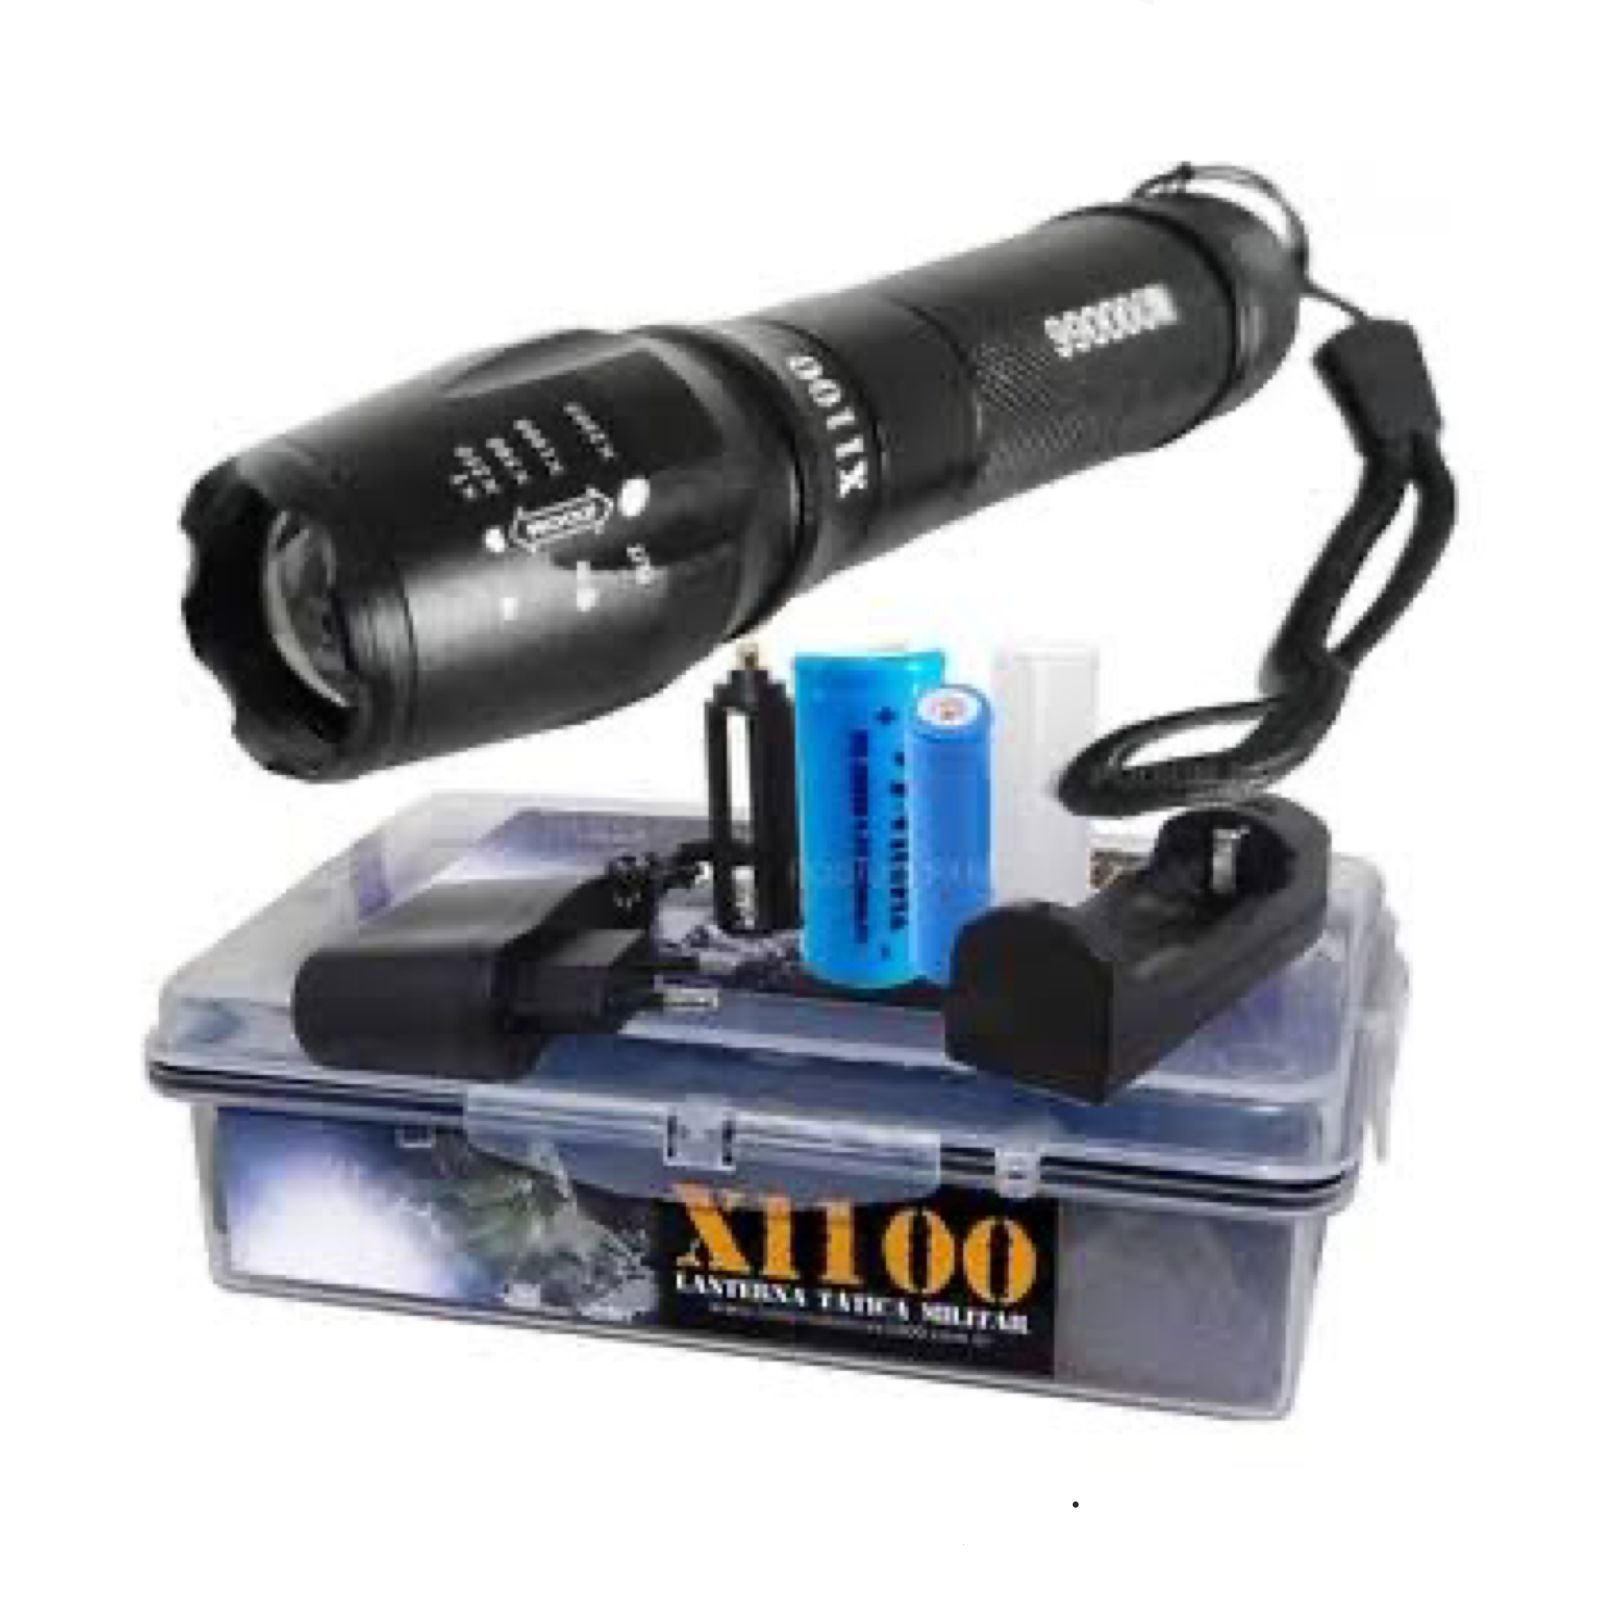 Lanterna Tática Militar X1100 - XML-T6 Potente Recarregável e Sem Fio - 2